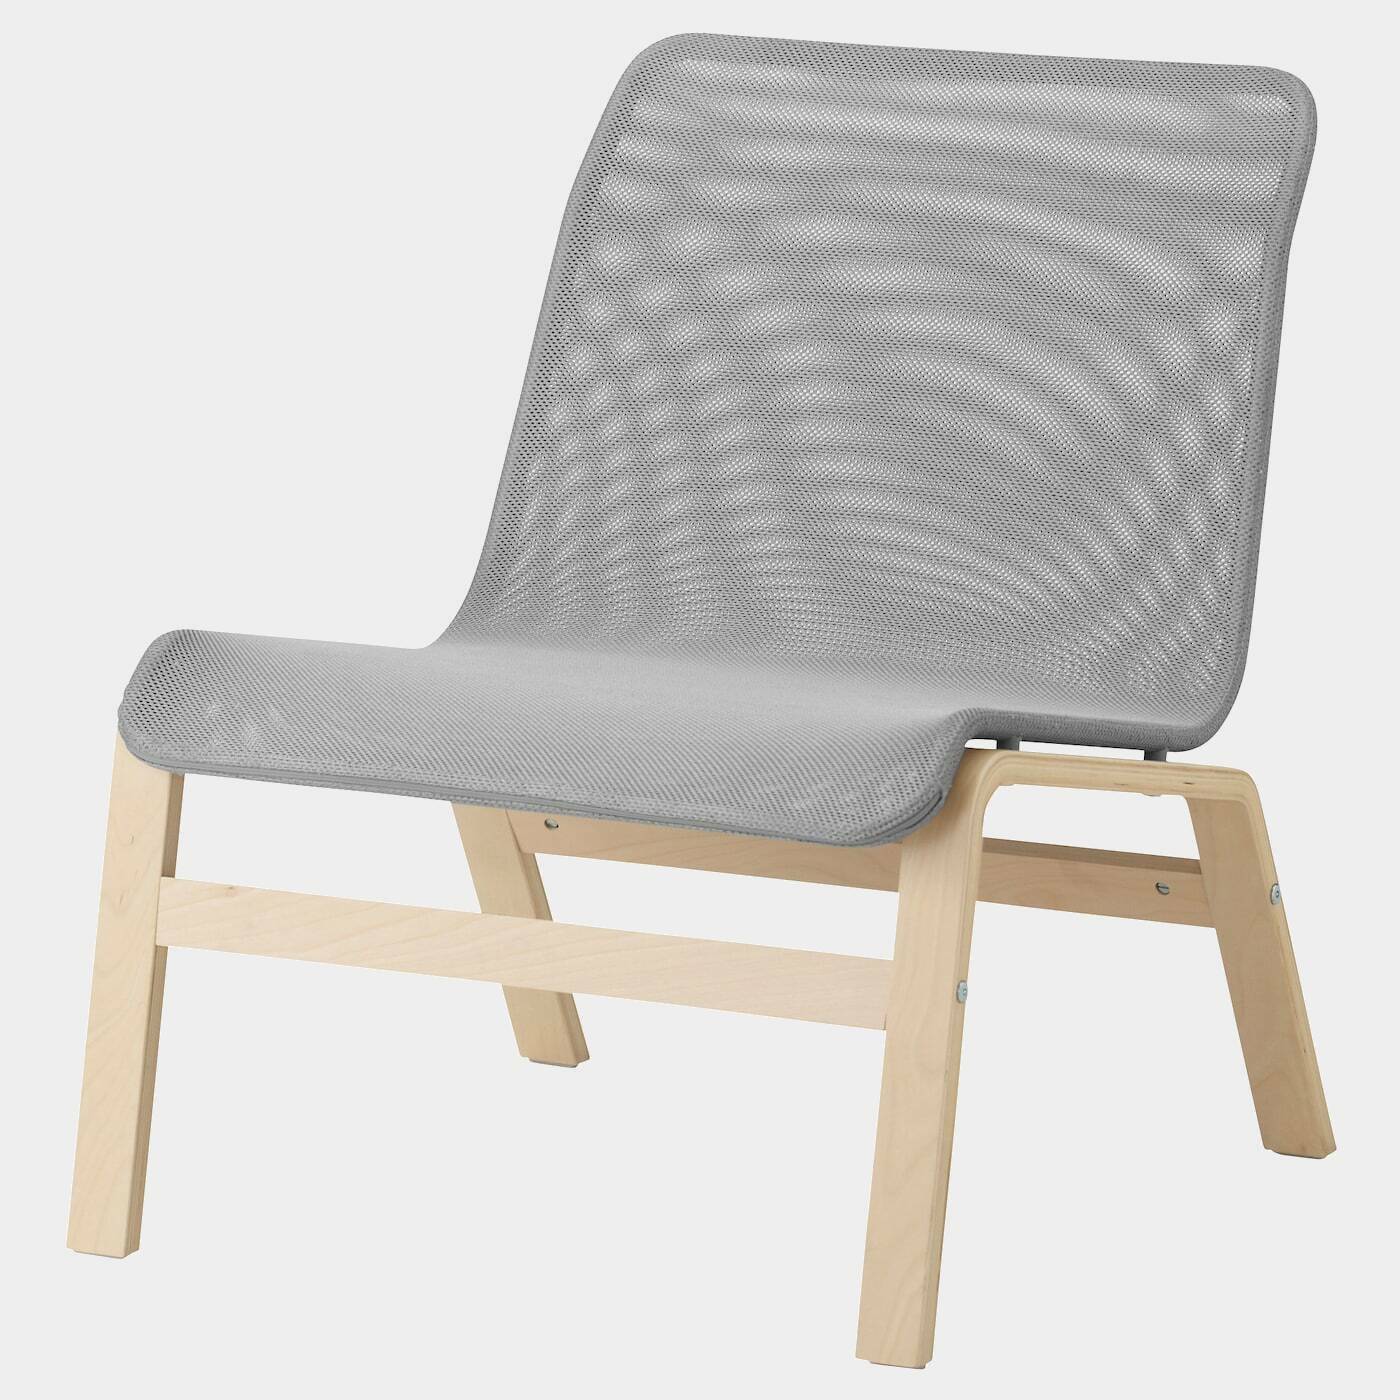 NOLMYRA Sessel  - Sessel & Récamieren - Möbel Ideen für dein Zuhause von Home Trends. Möbel Trends von Social Media Influencer für dein Skandi Zuhause.